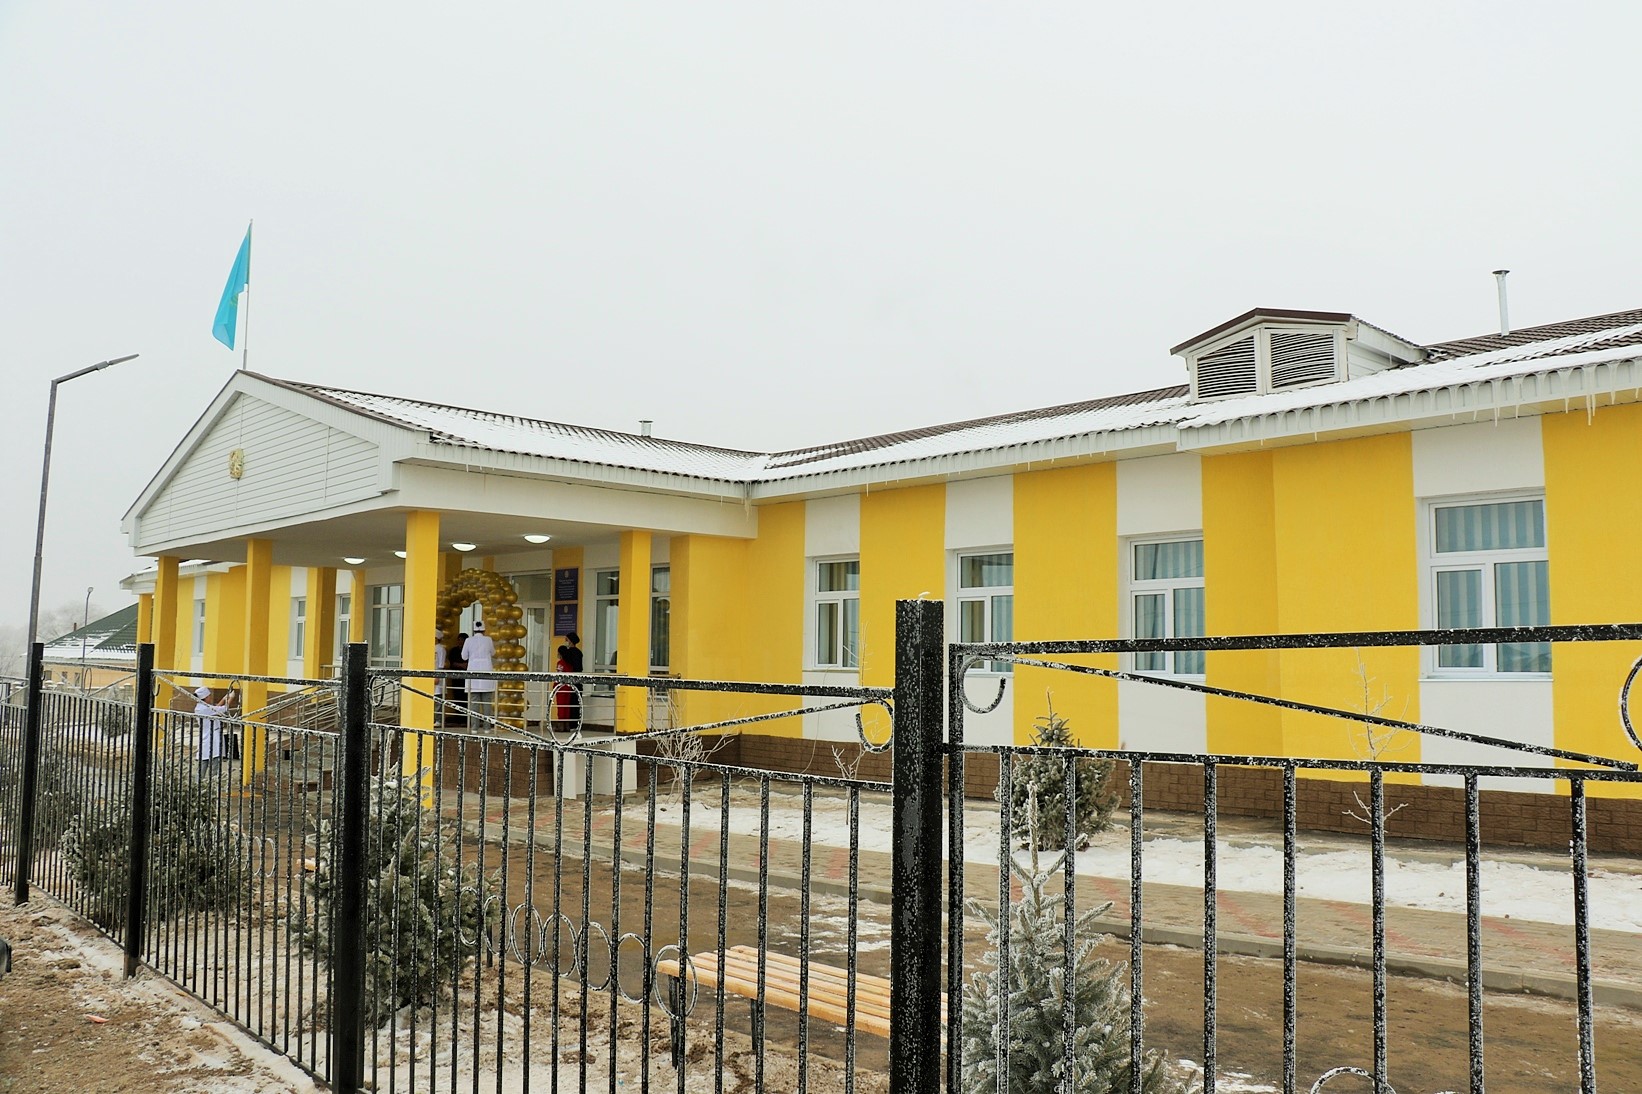 Ясли, амбулатория, дом культуры: в Алматинской области открыли общественно-важные объекты